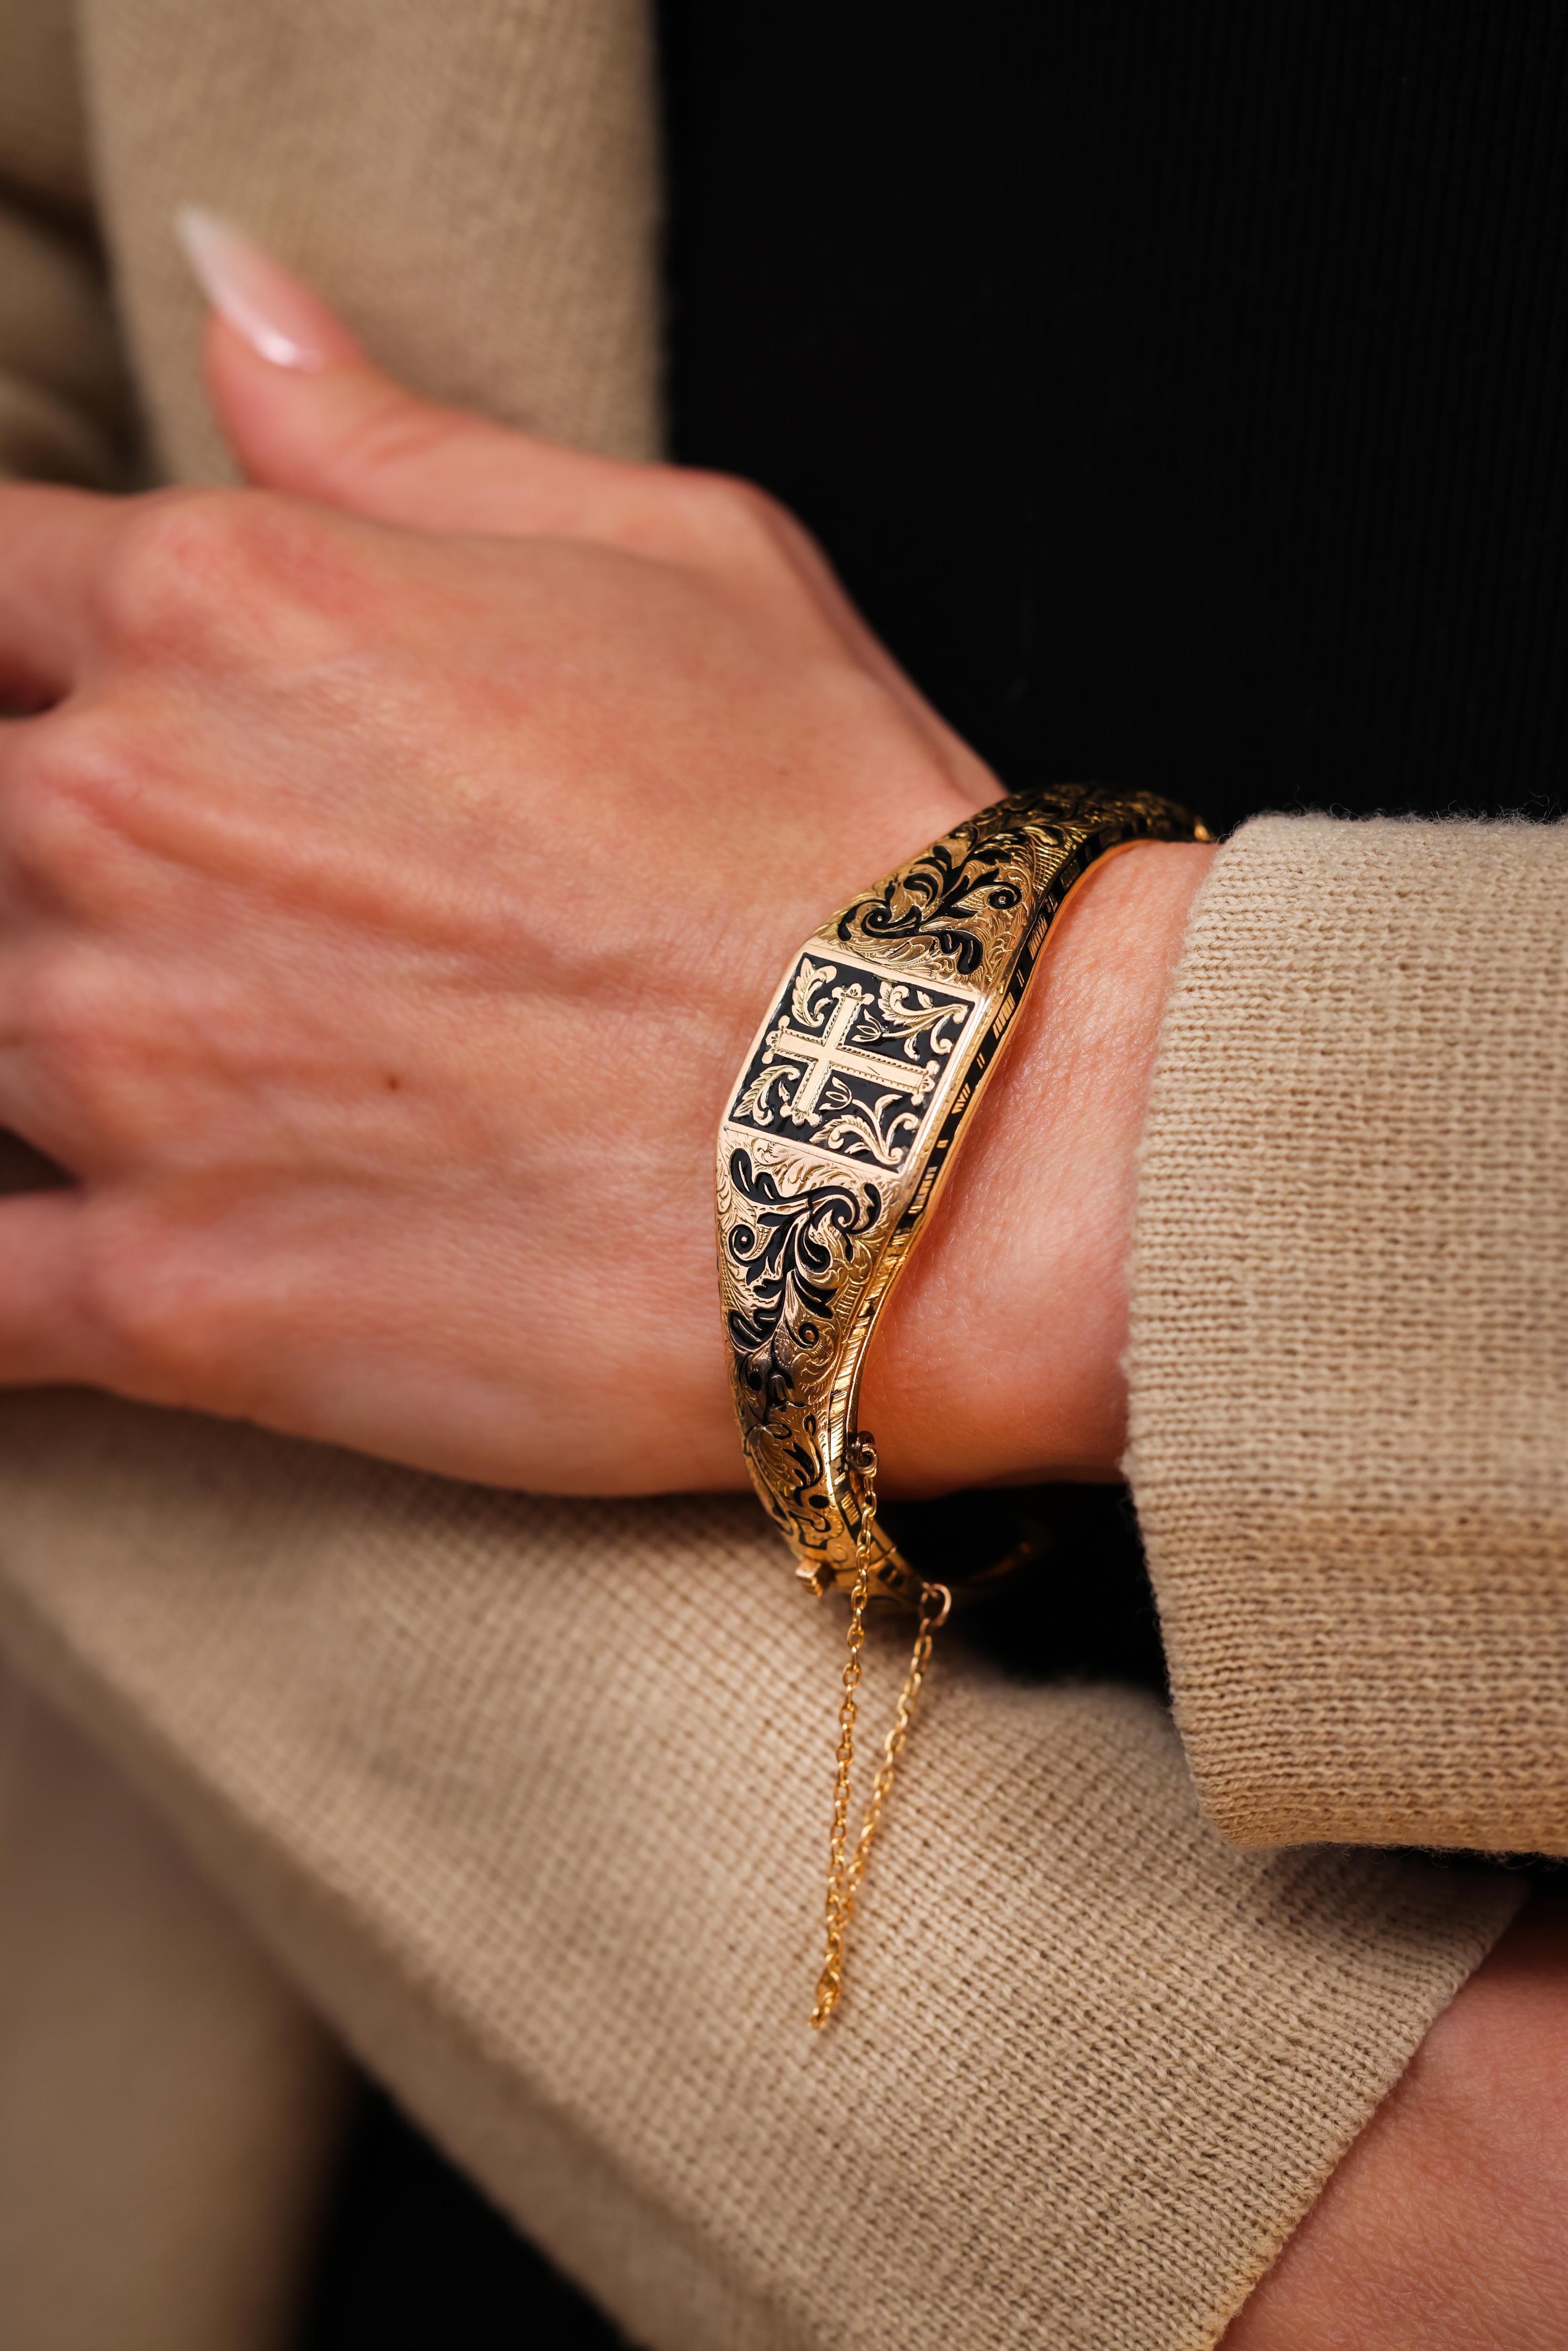 Schwarze Emaille 
14k Gelbgold 
Viktorianisch um 1843 mit eingraviertem Datum 
Mittleres/großes Handgelenk 
23.4 Gramm 


Dieses außergewöhnliche viktorianische Armband aus dem Jahr 1843 ist ein bemerkenswertes Artefakt seiner Zeit, das die